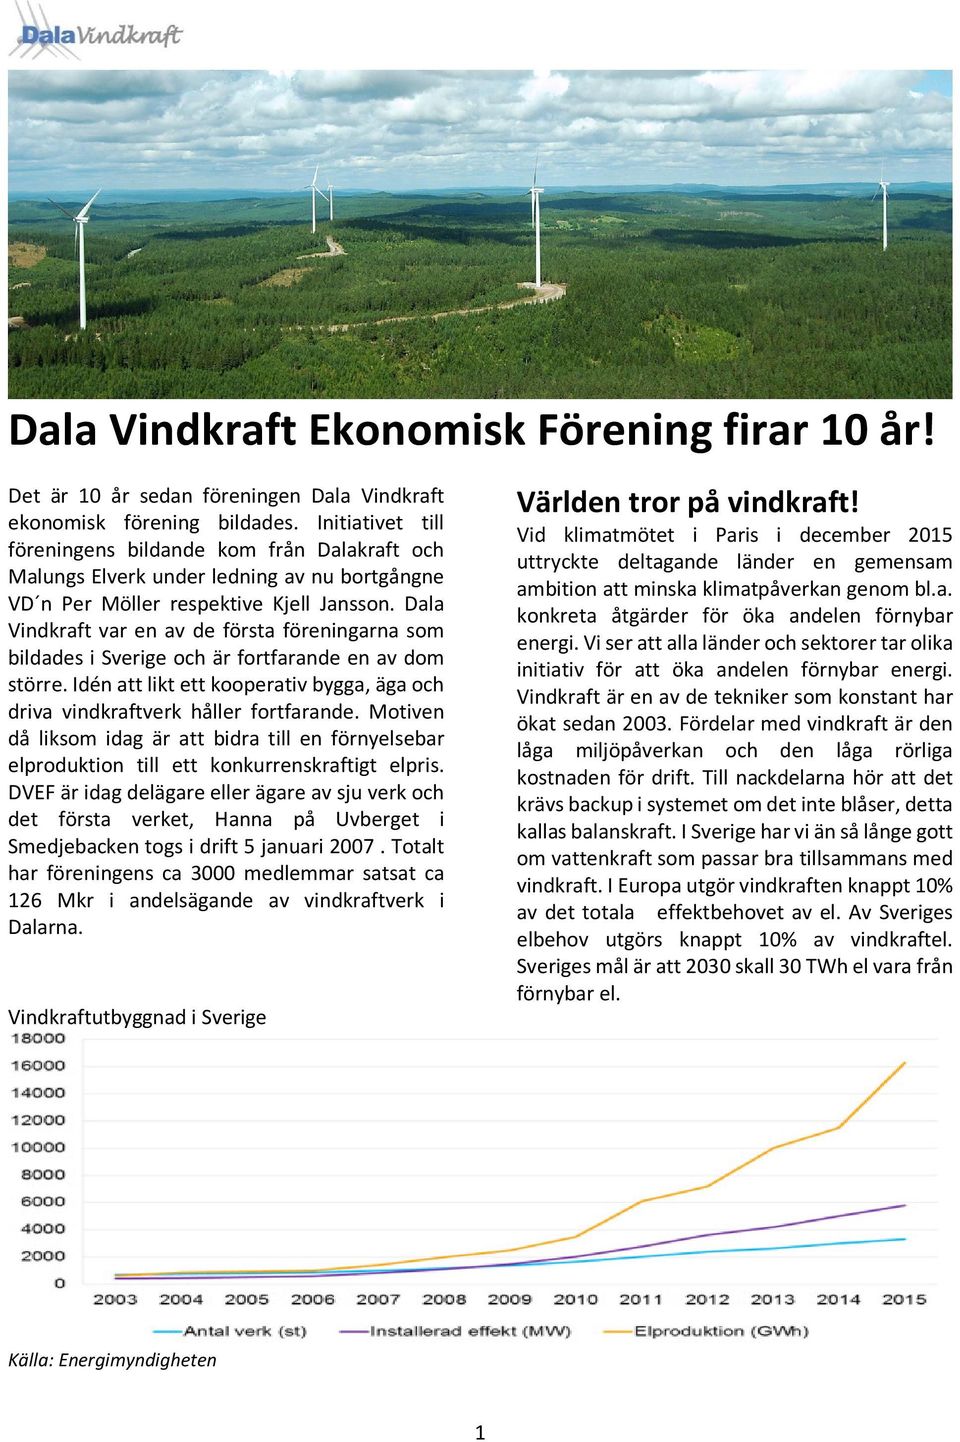 Dala Vindkraft var en av de första föreningarna som bildades i Sverige och är fortfarande en av dom större. Idén att likt ett kooperativ bygga, äga och driva vindkraftverk håller fortfarande.